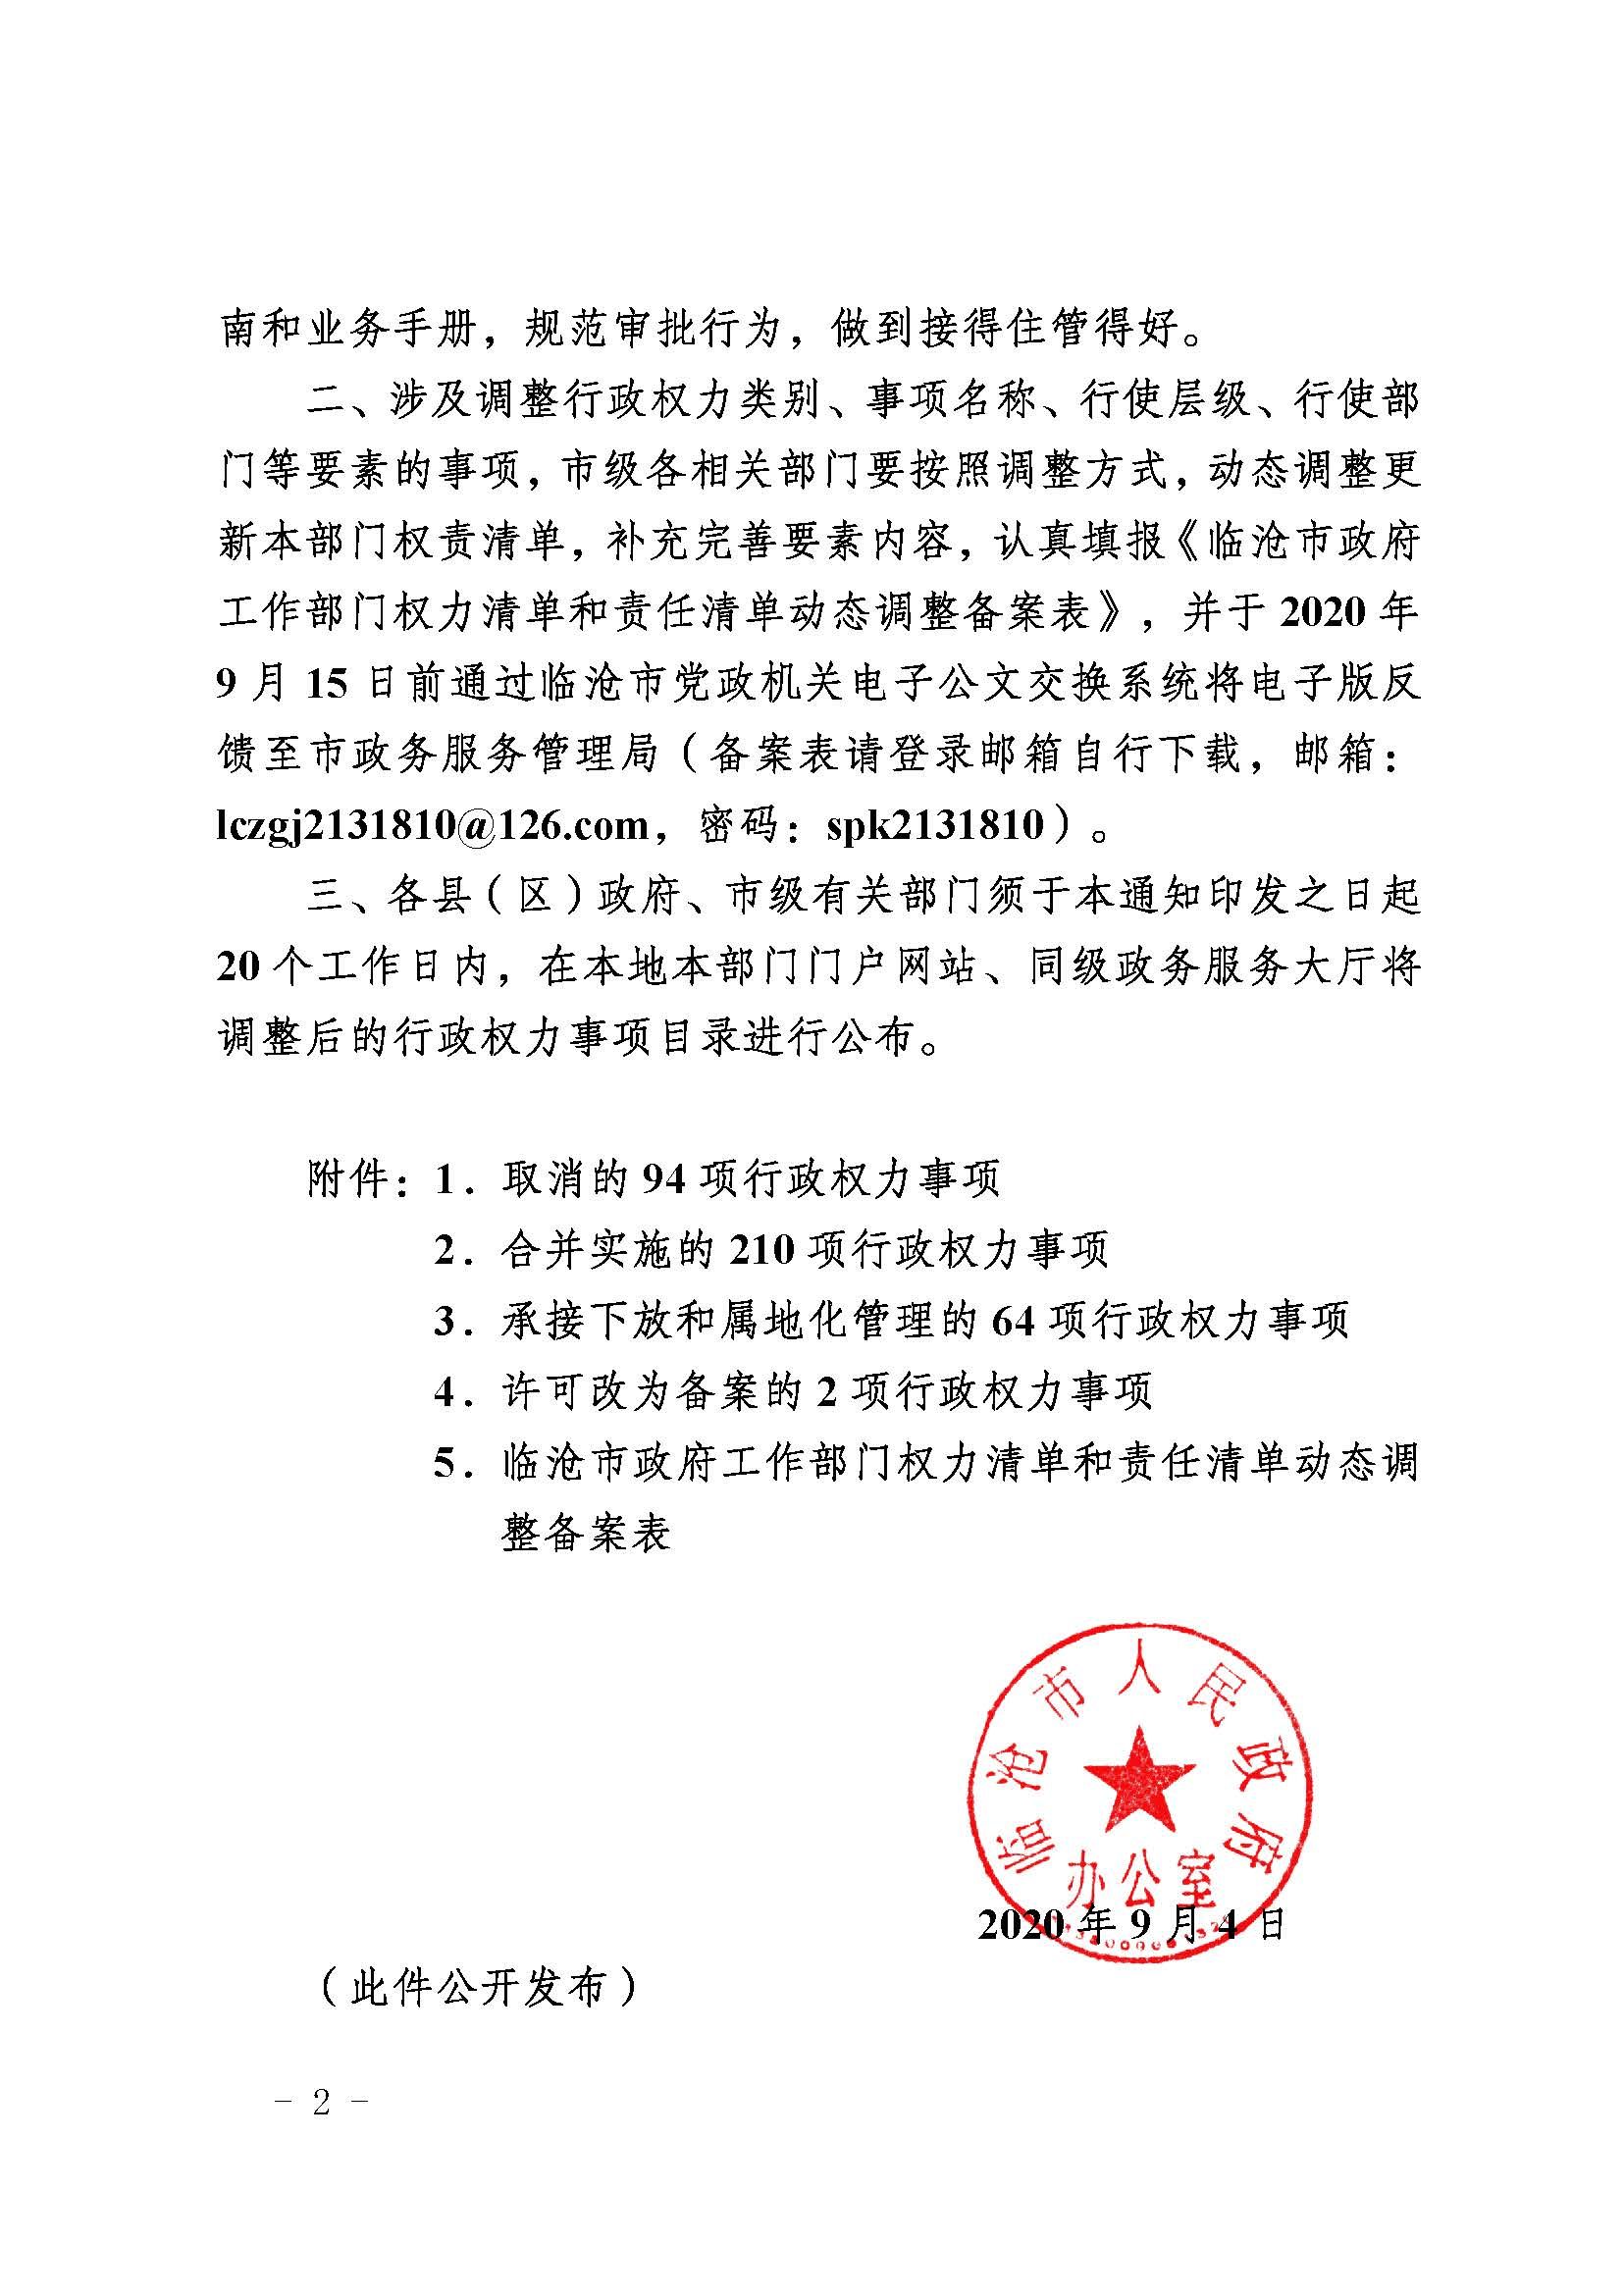 临沧市人民政府办公室关于做好调整370项行政权力事项工作的通知